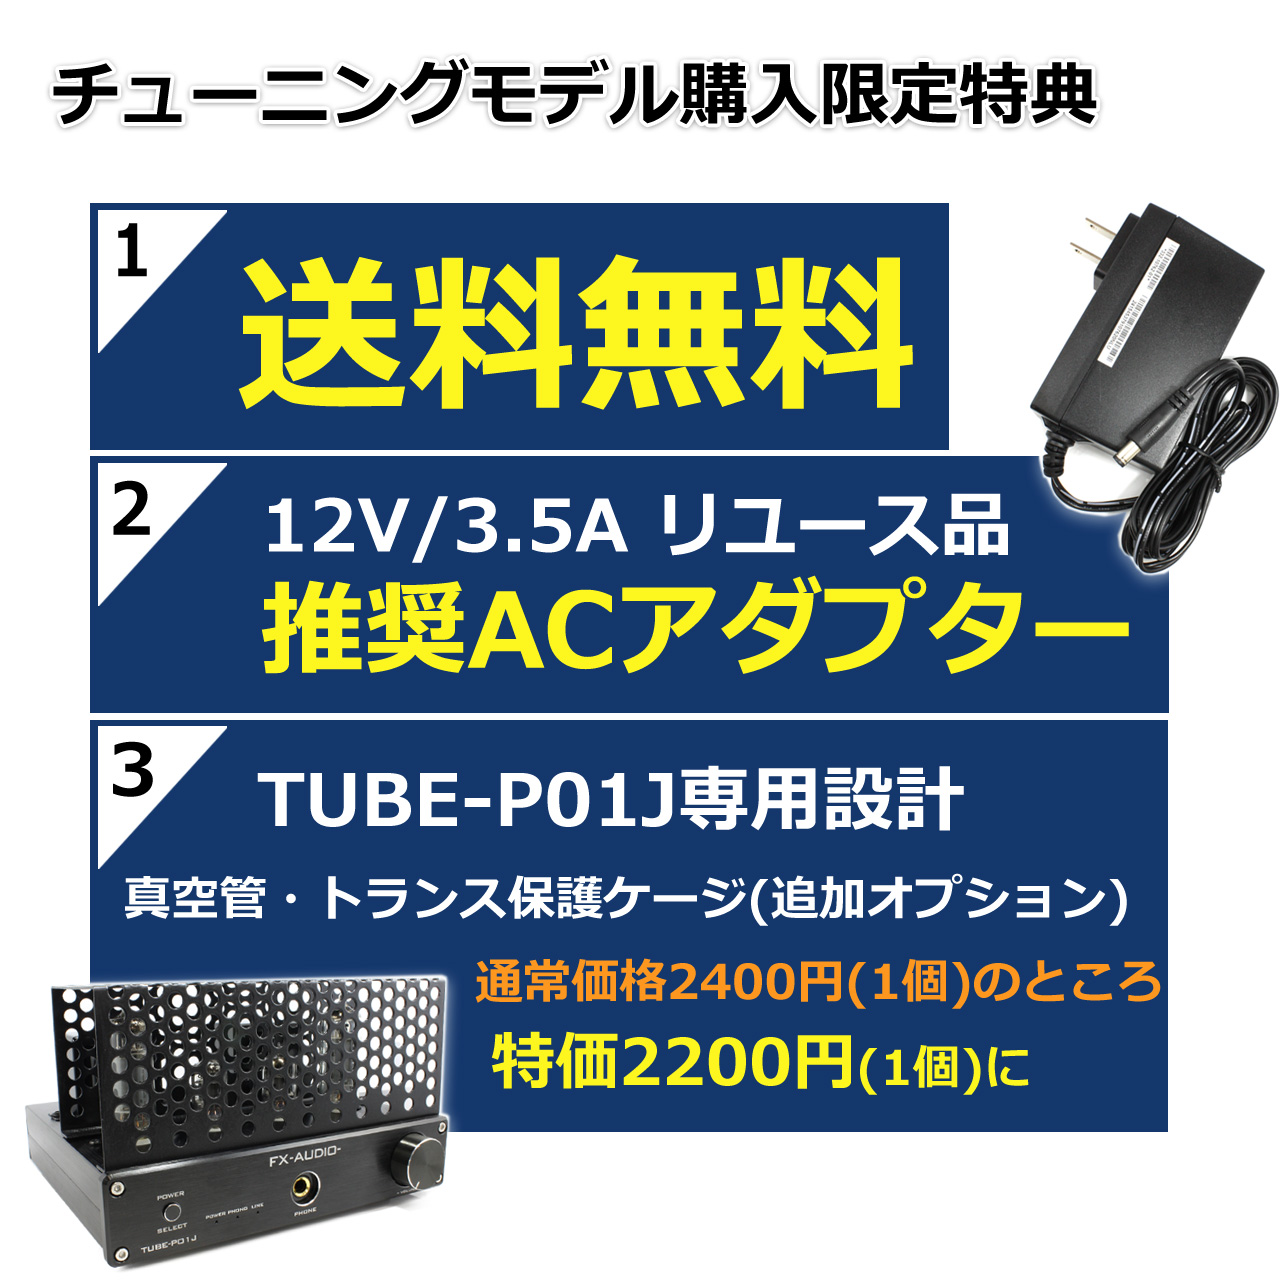 [即納]FX-AUDIO- TUBE-P01J[シルバー]【チューニングモデル】シングルエンド純A級 真空管プリメインアンプ